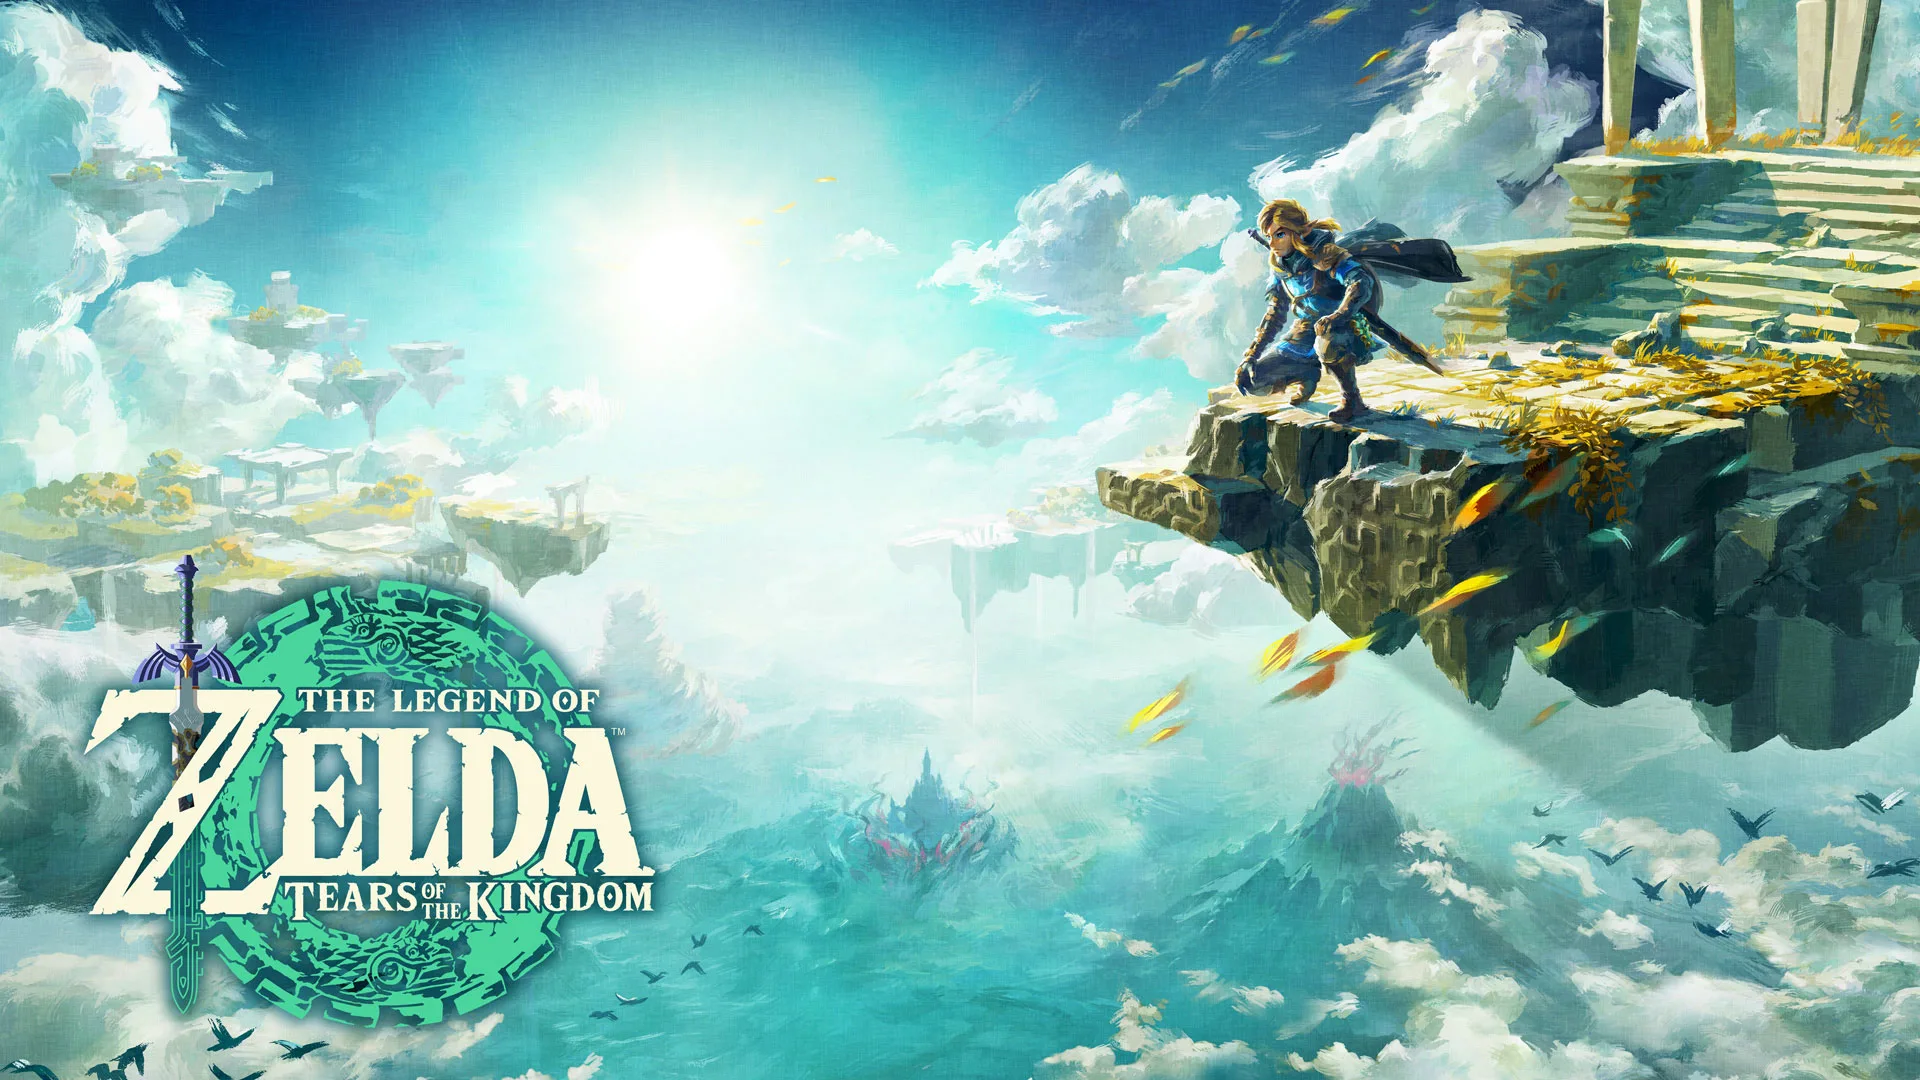 The Legend of Zelda jpg